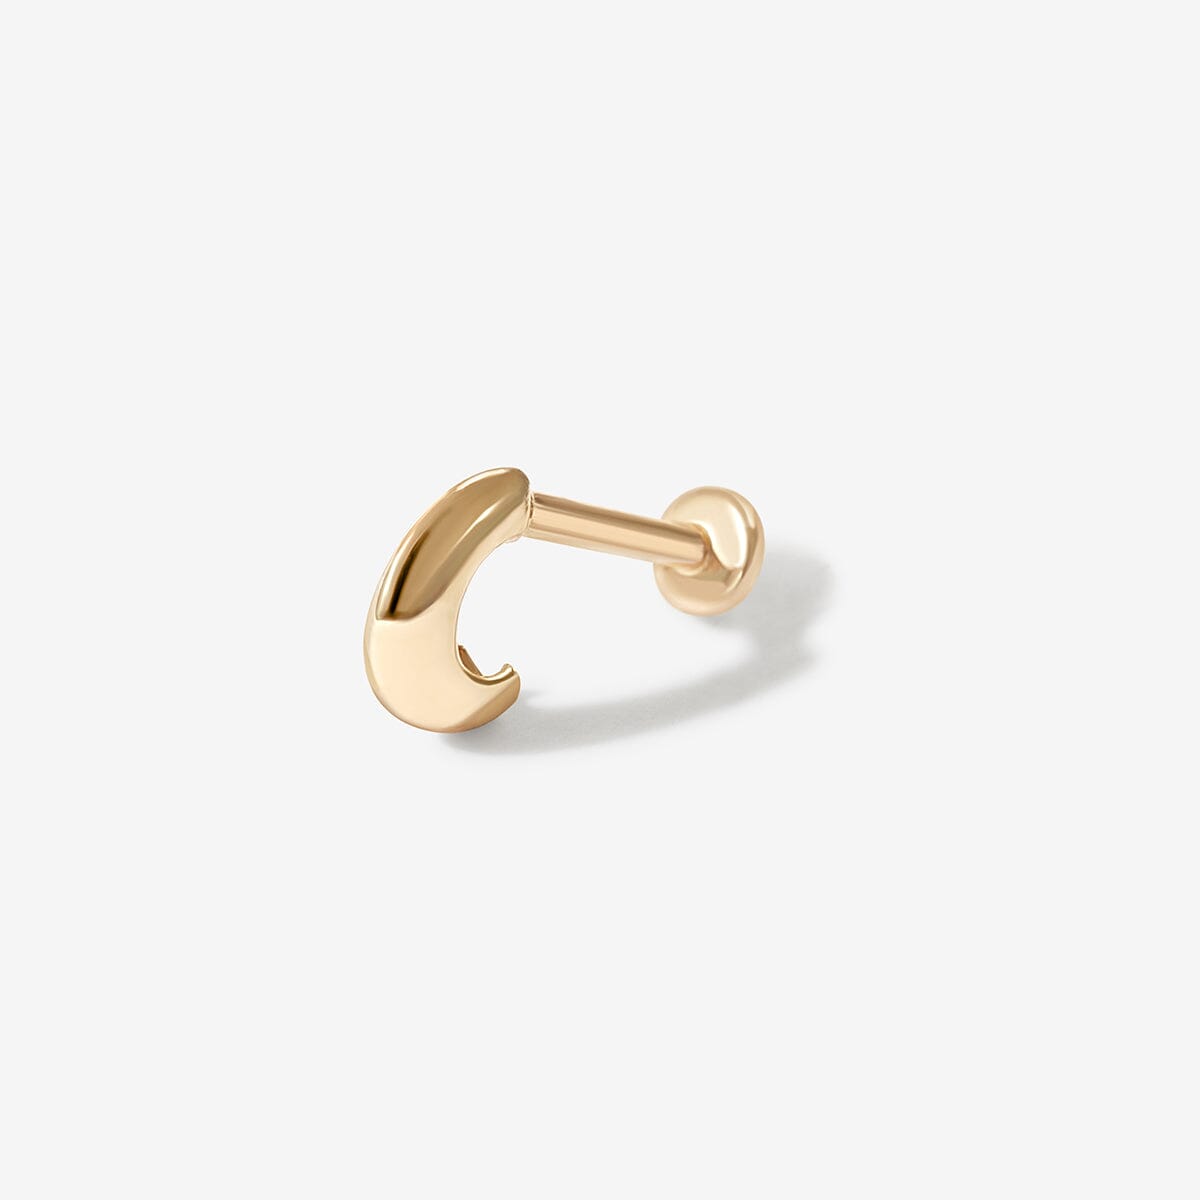 Gold Patt Earrings | Fine Solid 14 Karat | Adornmonde